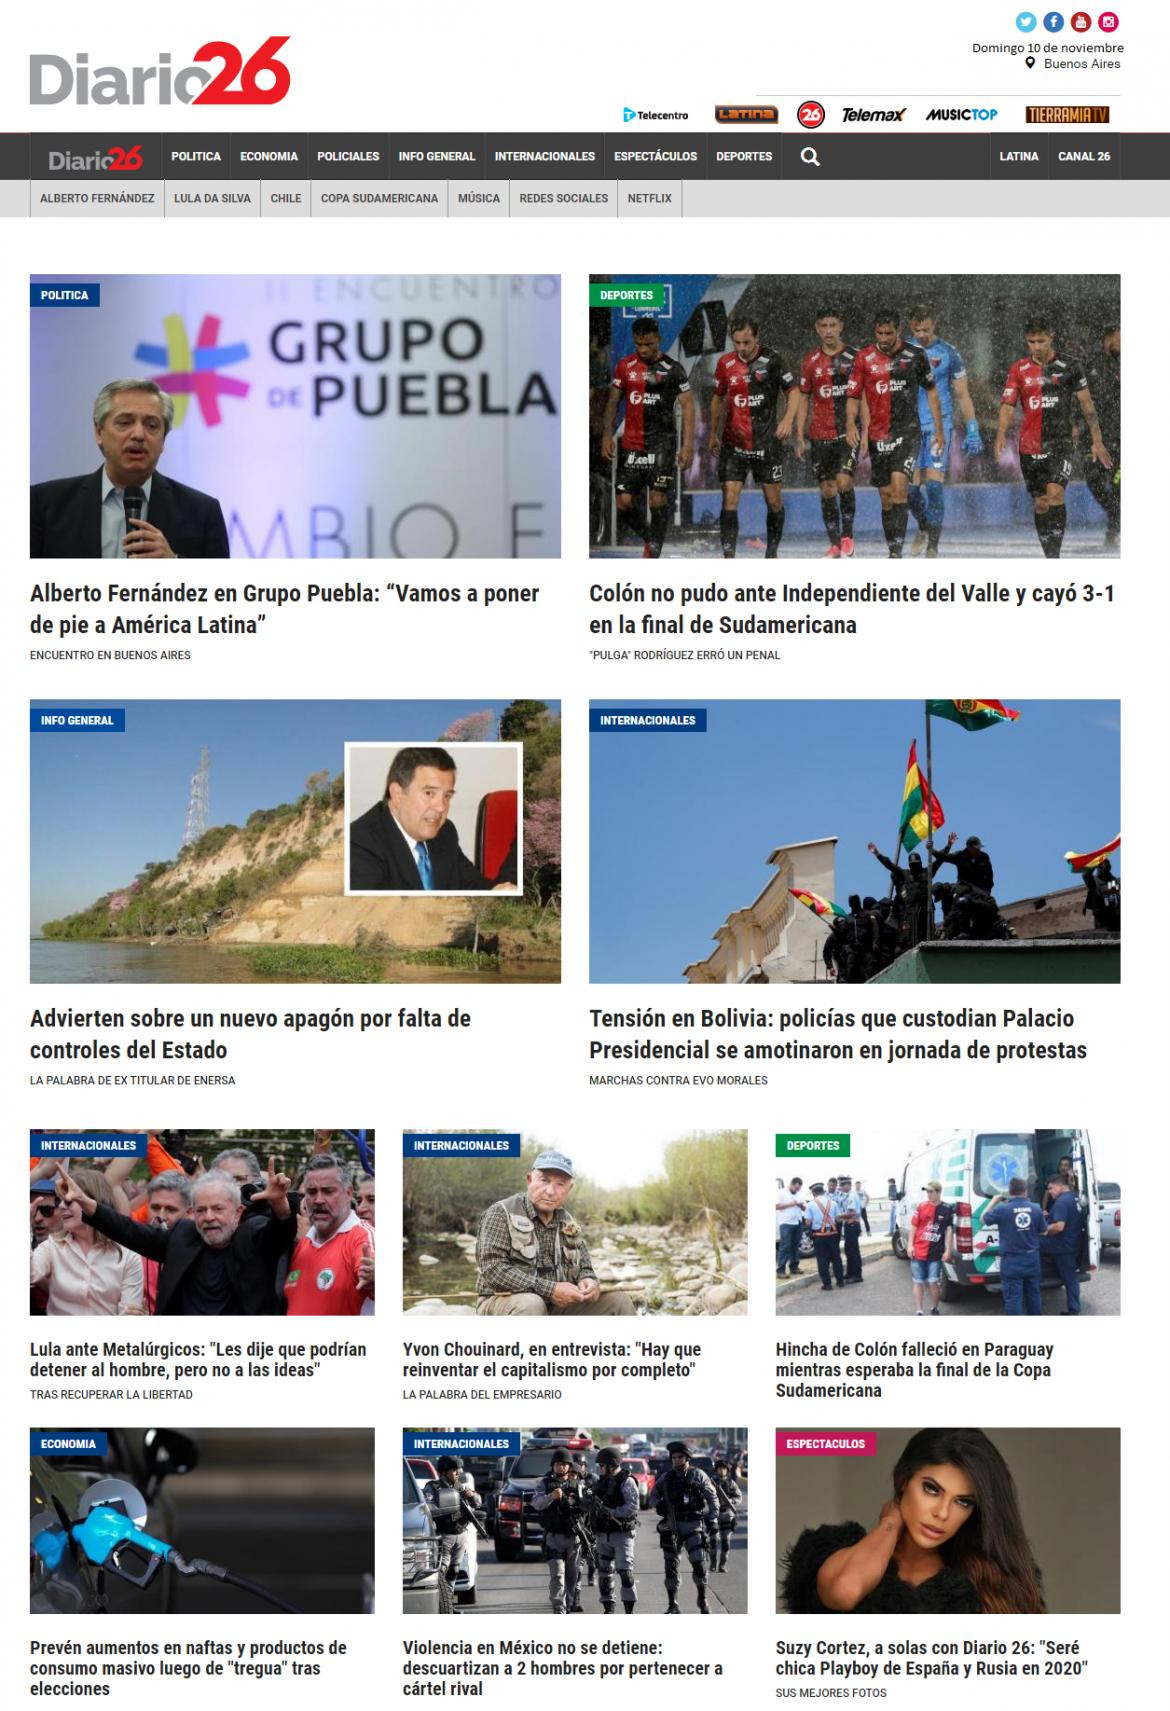 Tapas de diarios, Diario 26, domingo 10-11-19